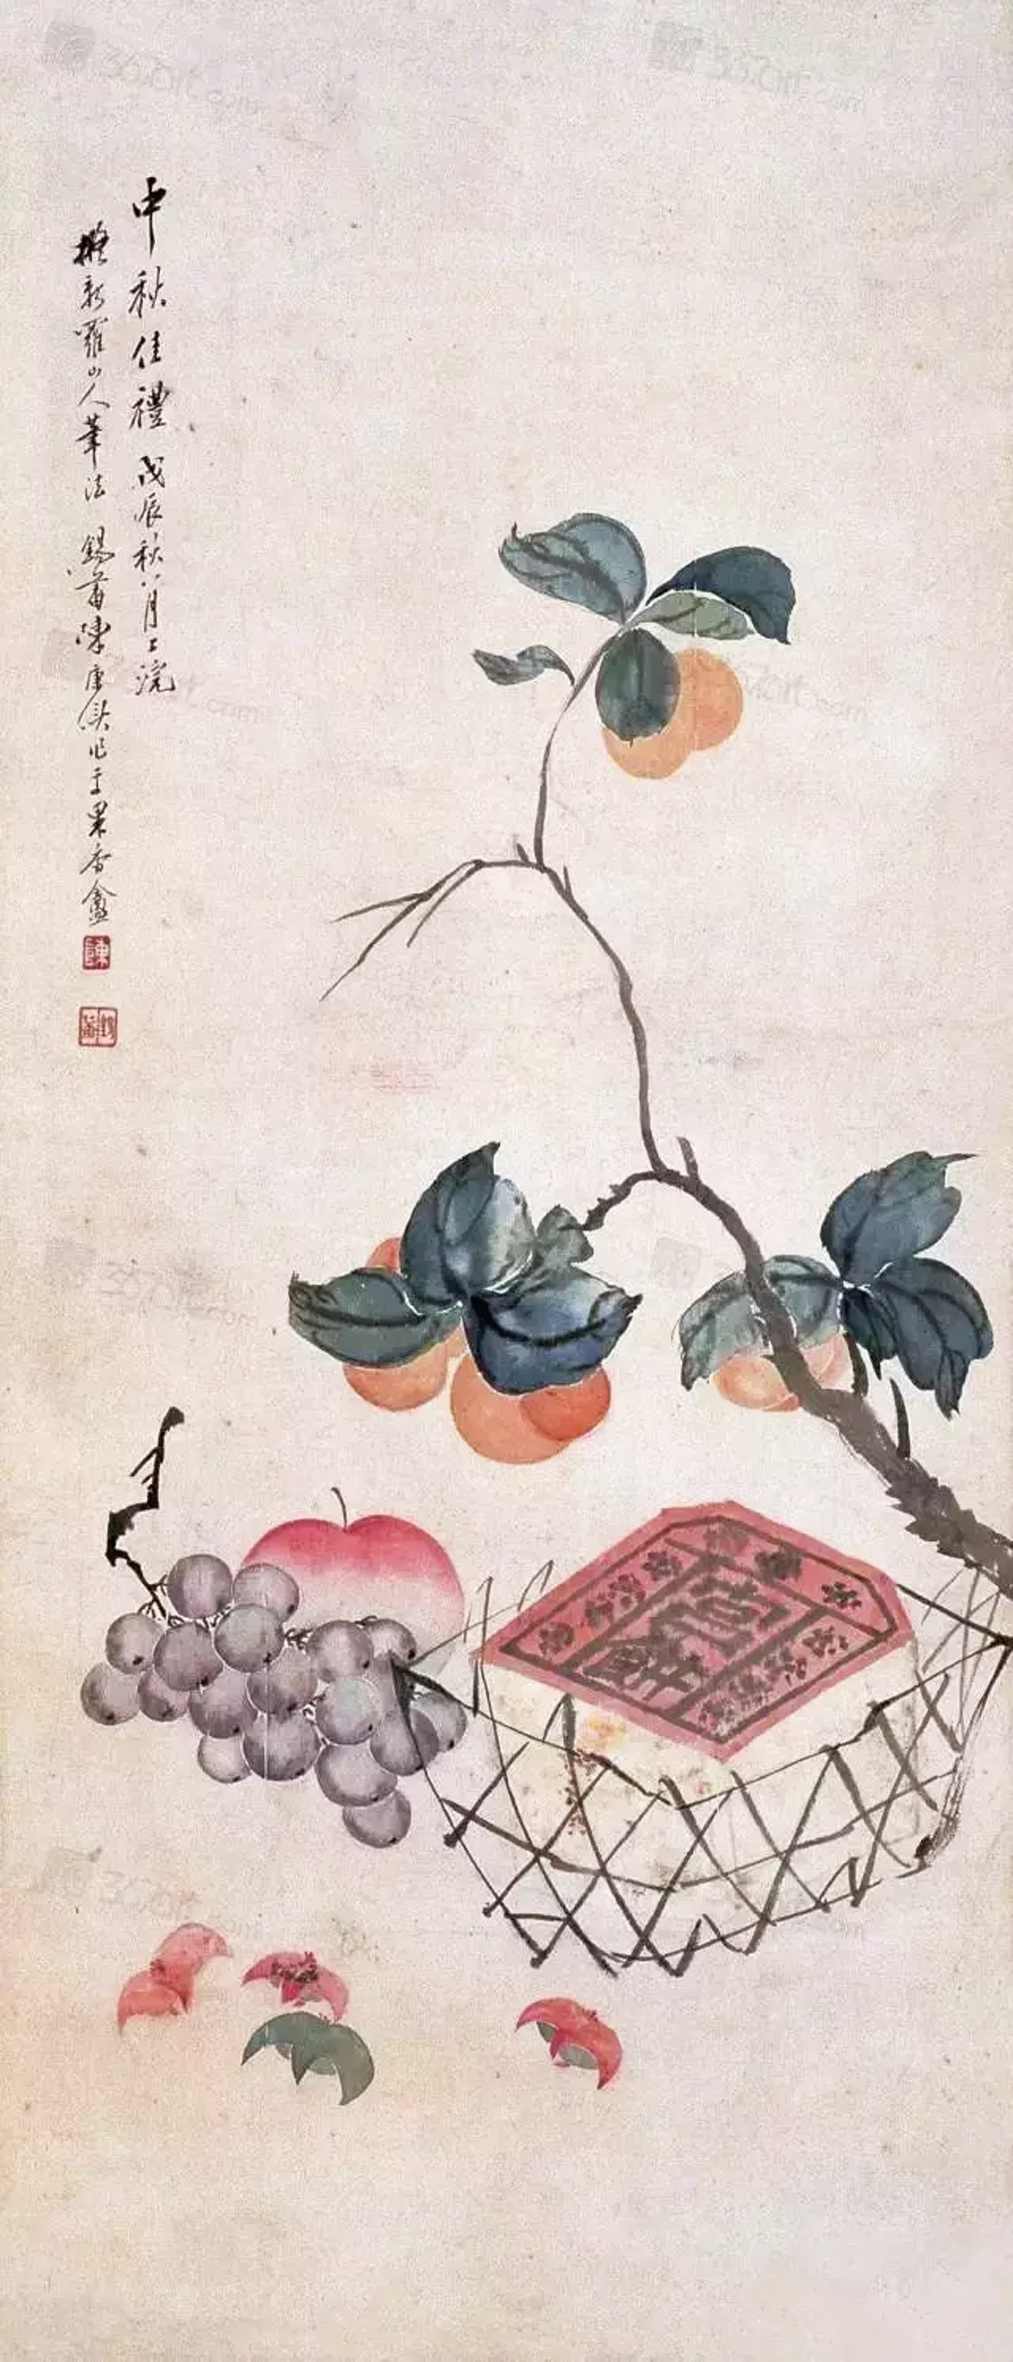 中秋佳礼(国画)清 陈康侯扬州博物馆藏